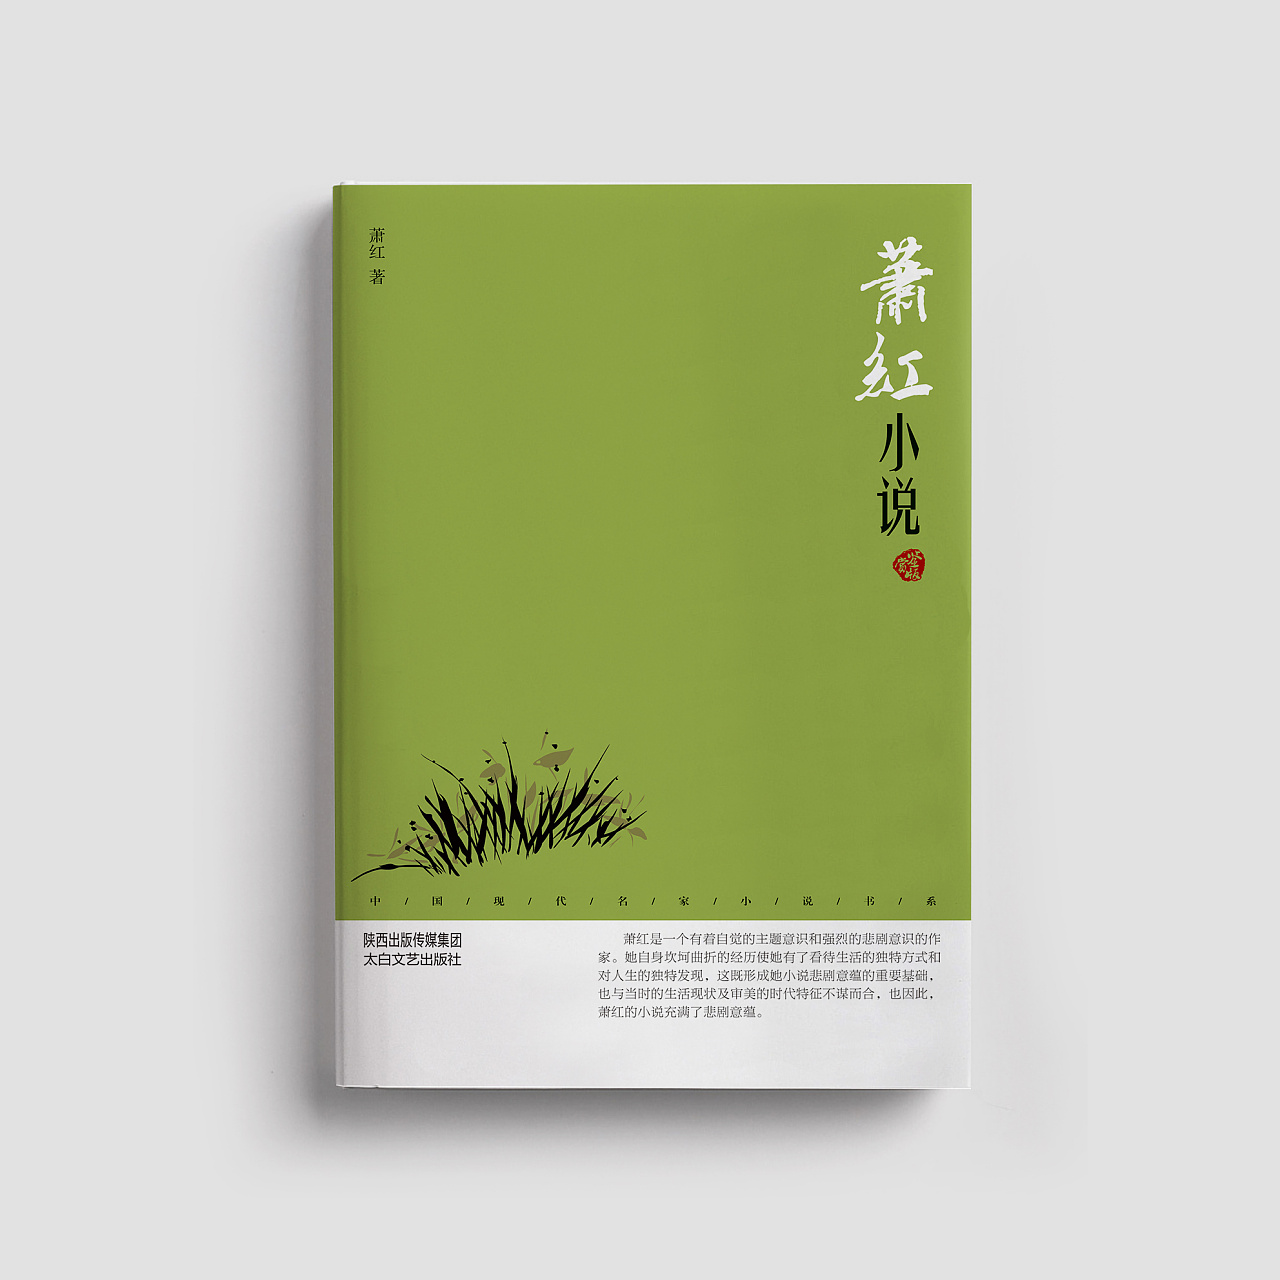 书籍封面设计合集 · 文学类(三)